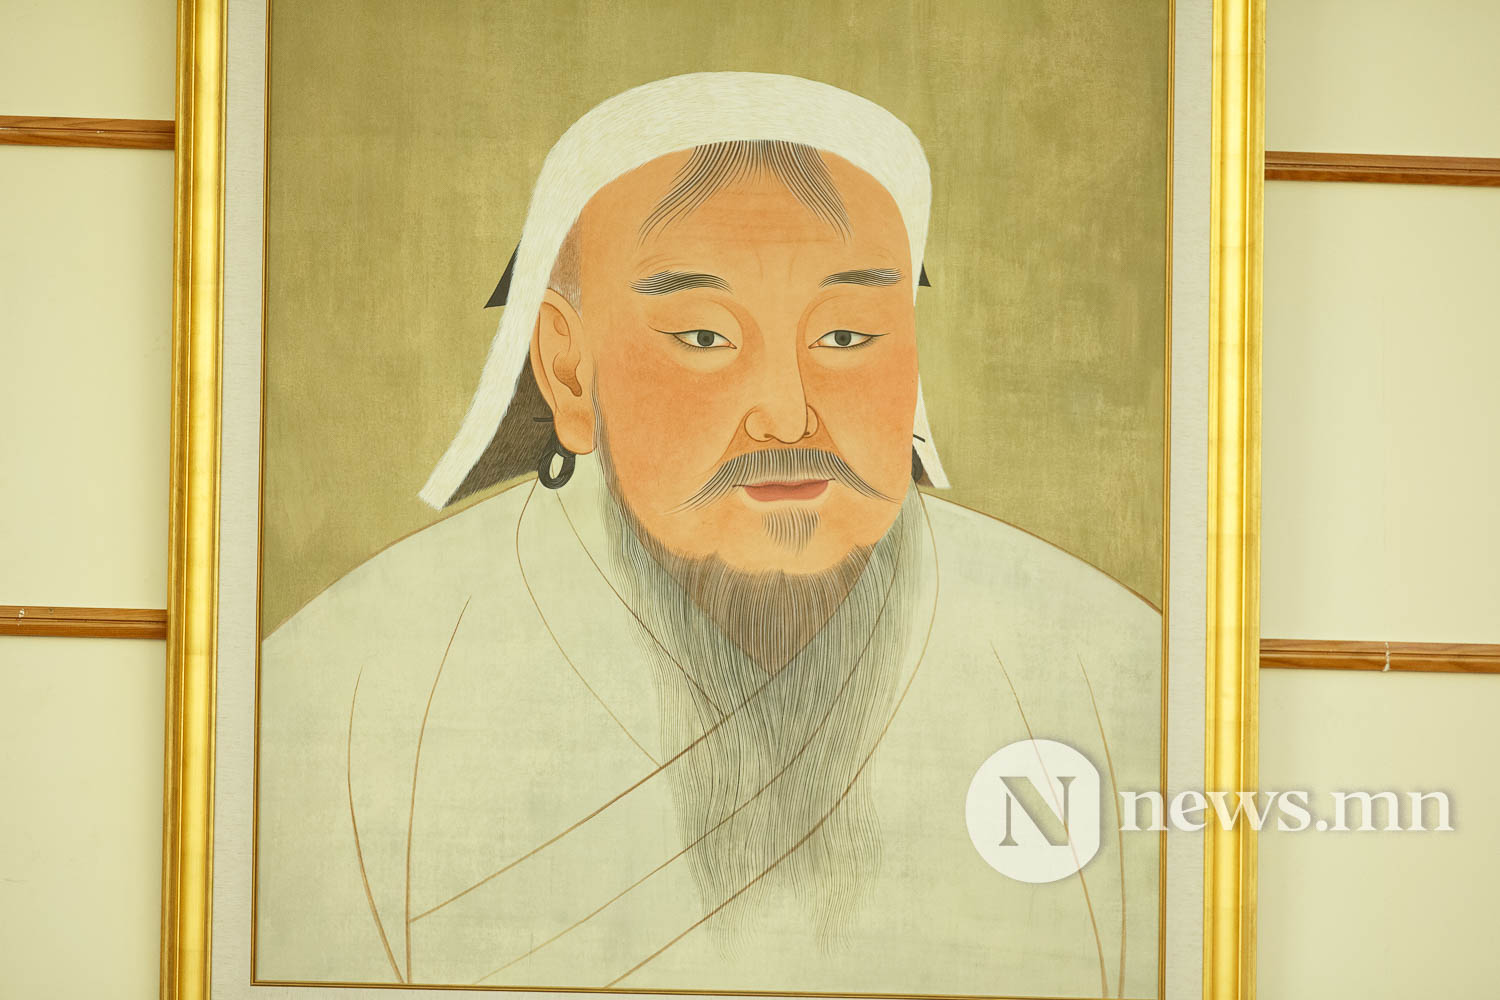 УИХ намрын чуулган нээлт гишүүд (23 of 76) Чингис хаан